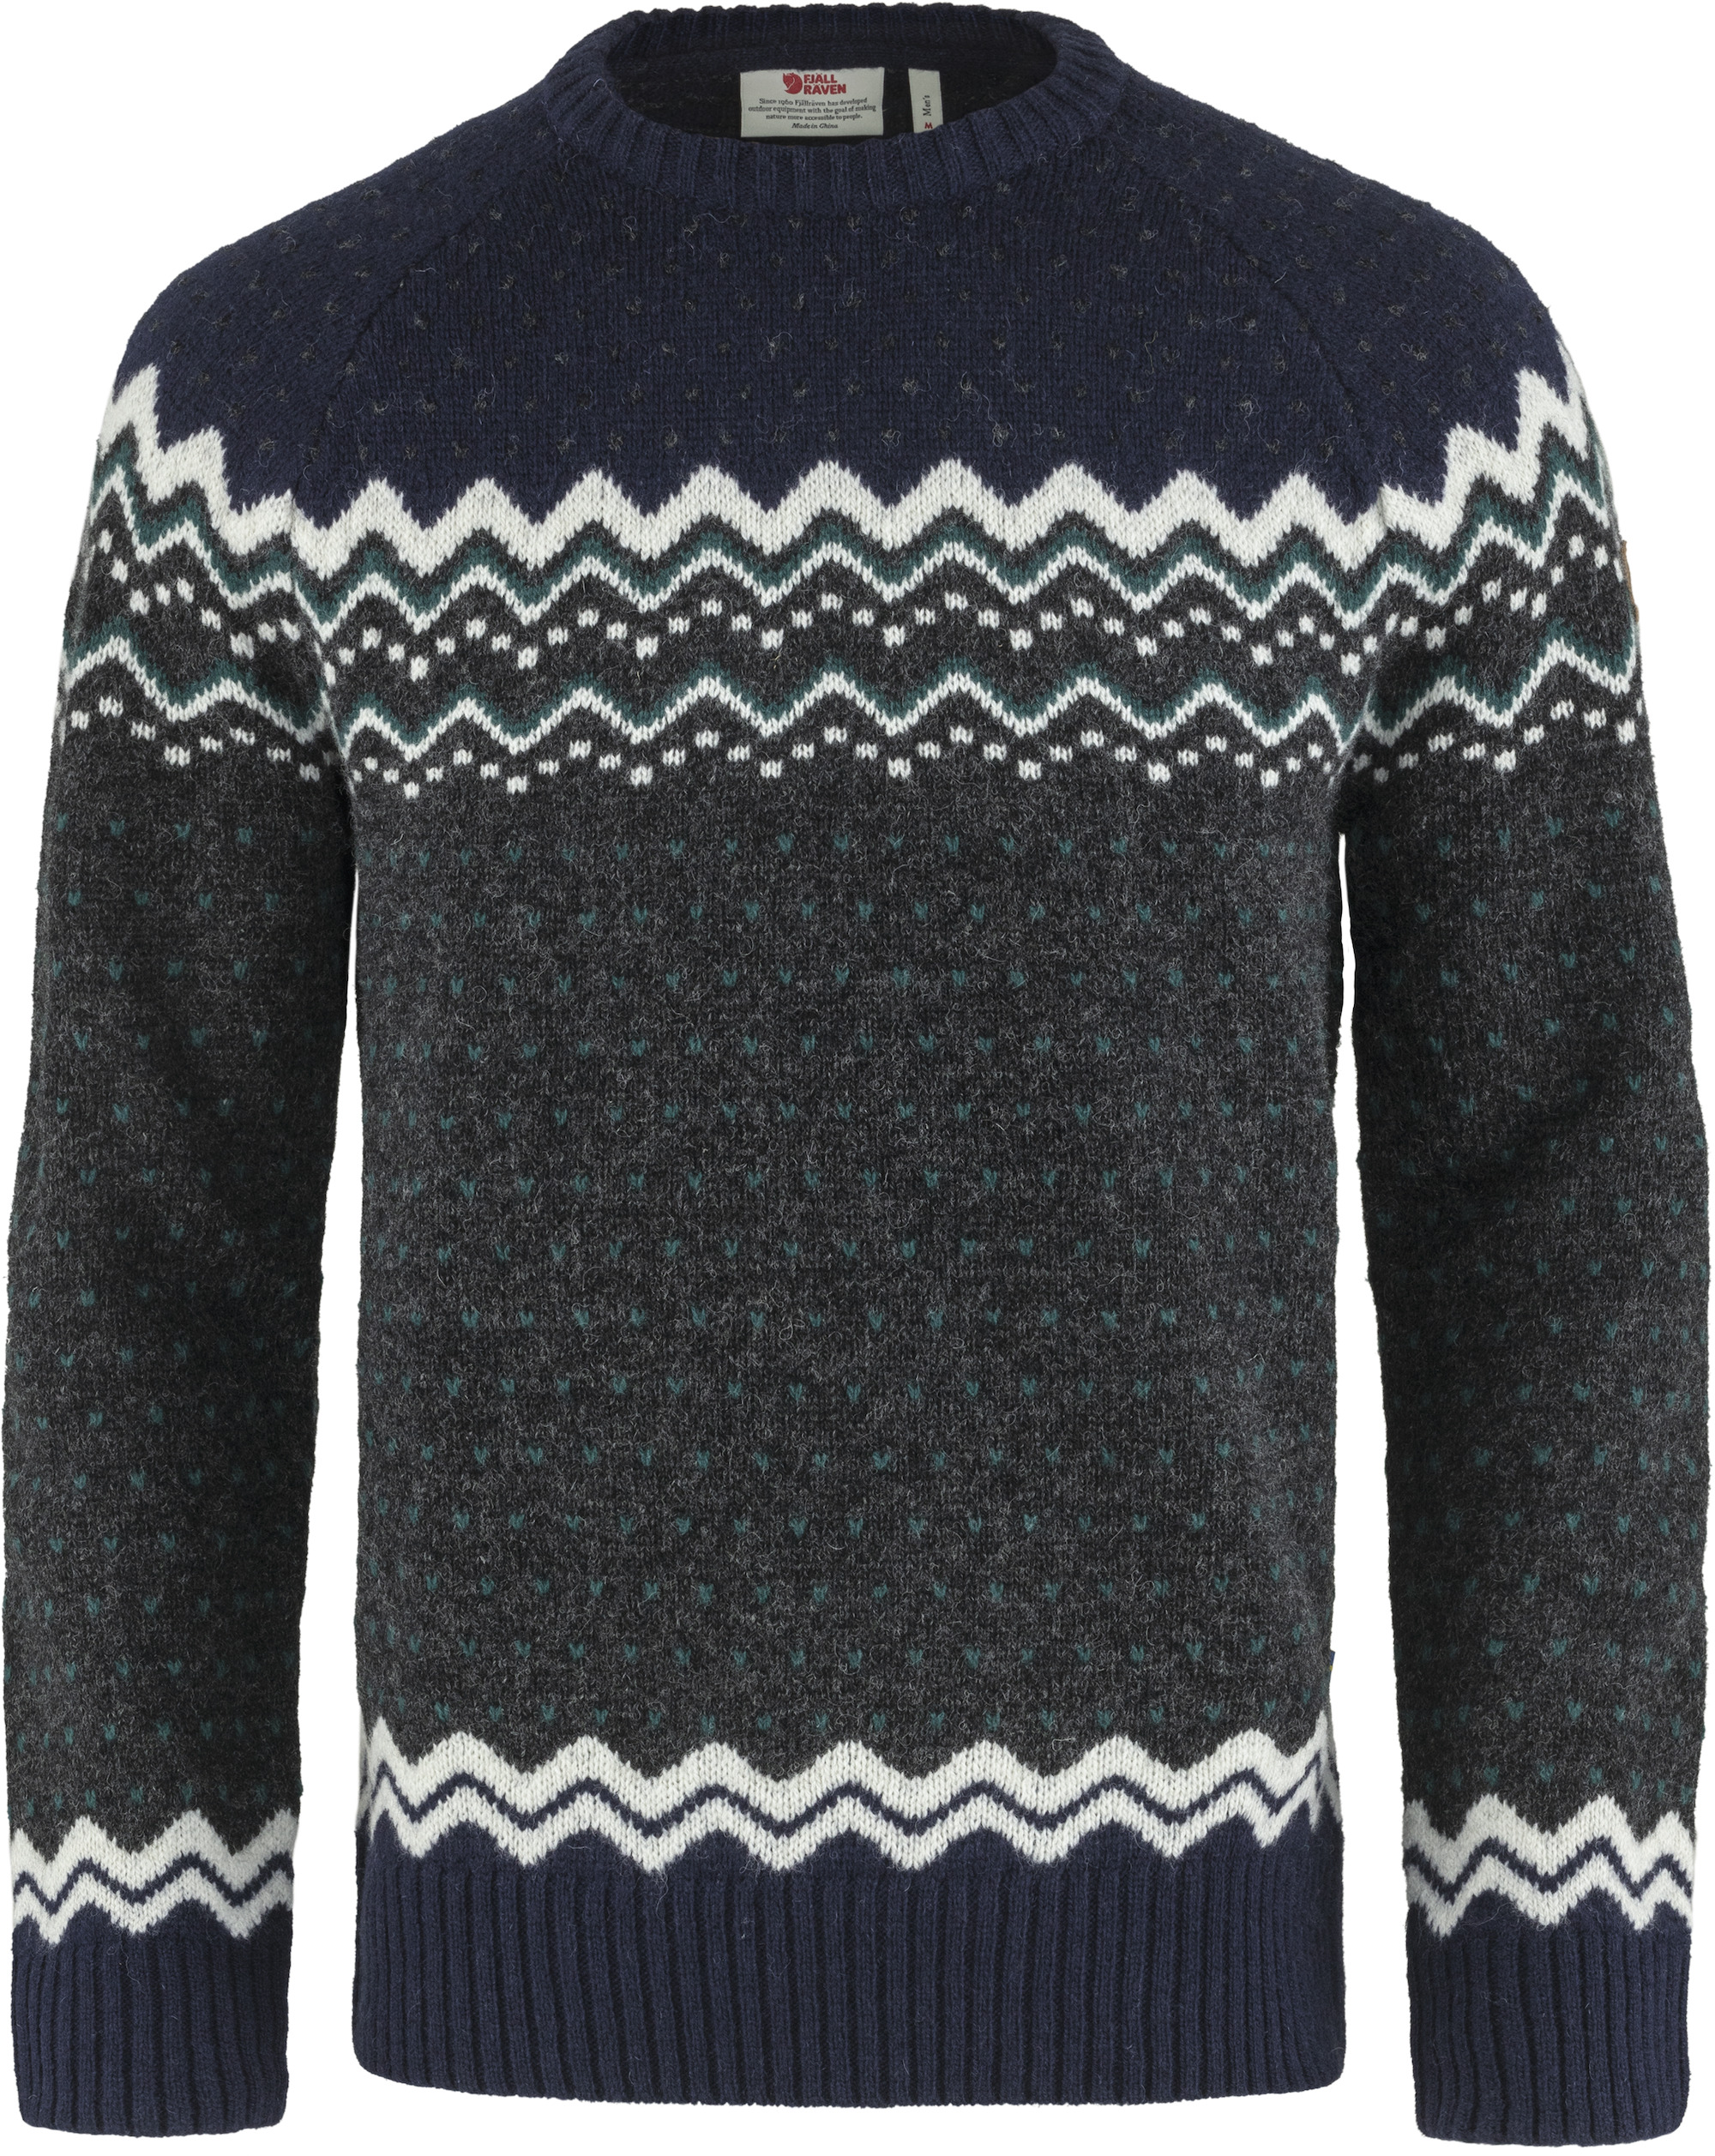 Island Green Pull en Tricot avec Fermeture éclair 1/4 pour Homme Sweater Bleu Marine XL 